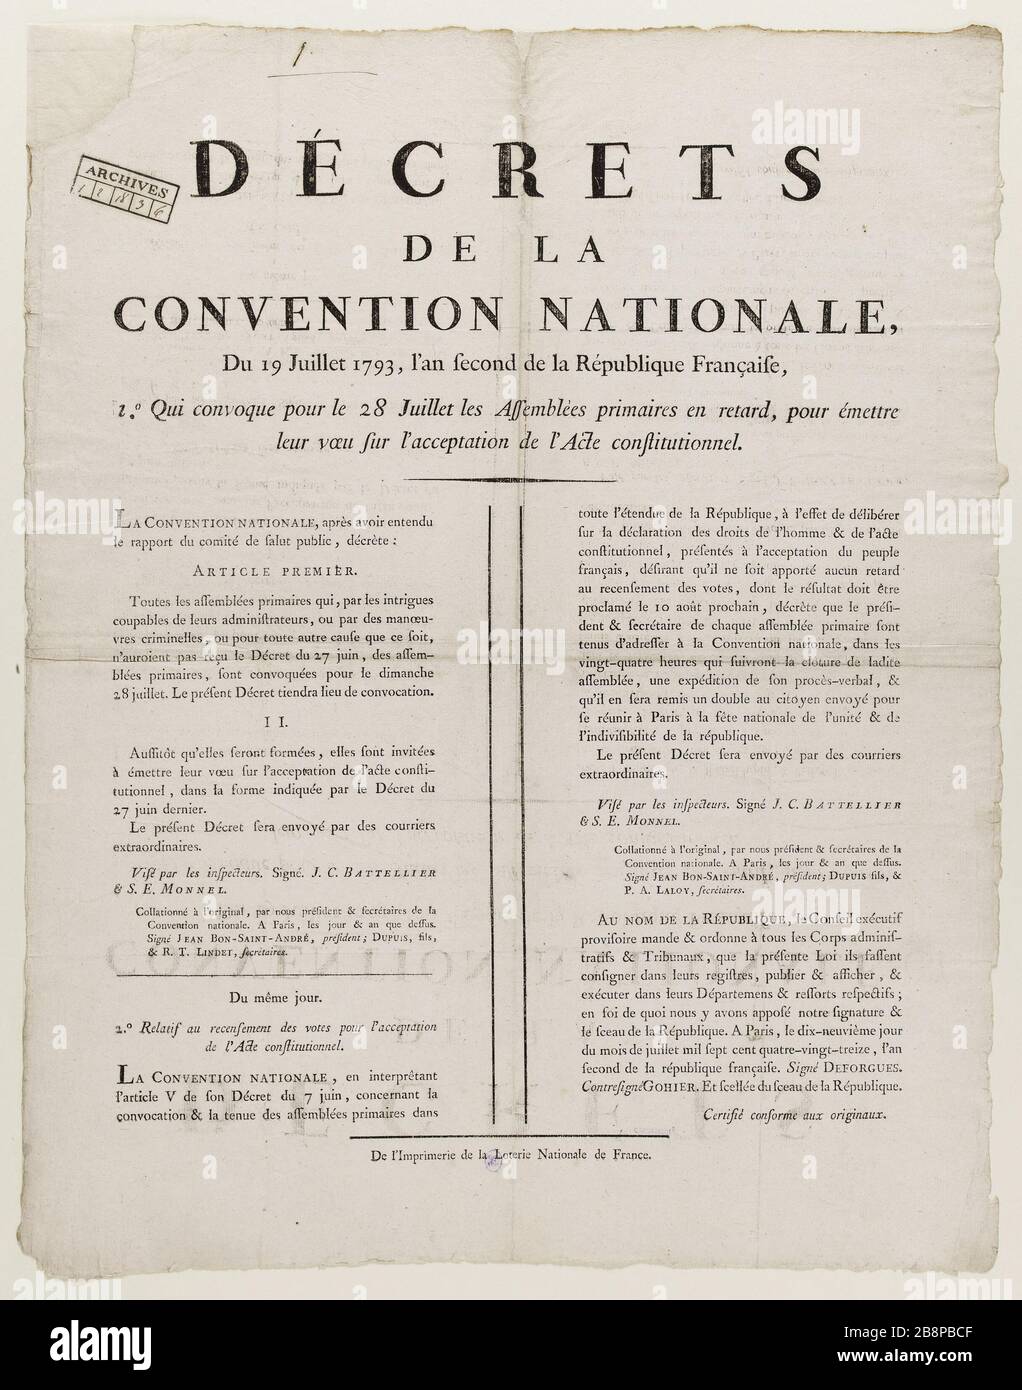 DECREE OF THE NATIONAL CONVENTION July 19, 1793 Anonyme. 'Décrets de la Convention Nationale du 19 Juillet 1793'. Typographie. 1793. Paris, musée Carnavalet. Stock Photo